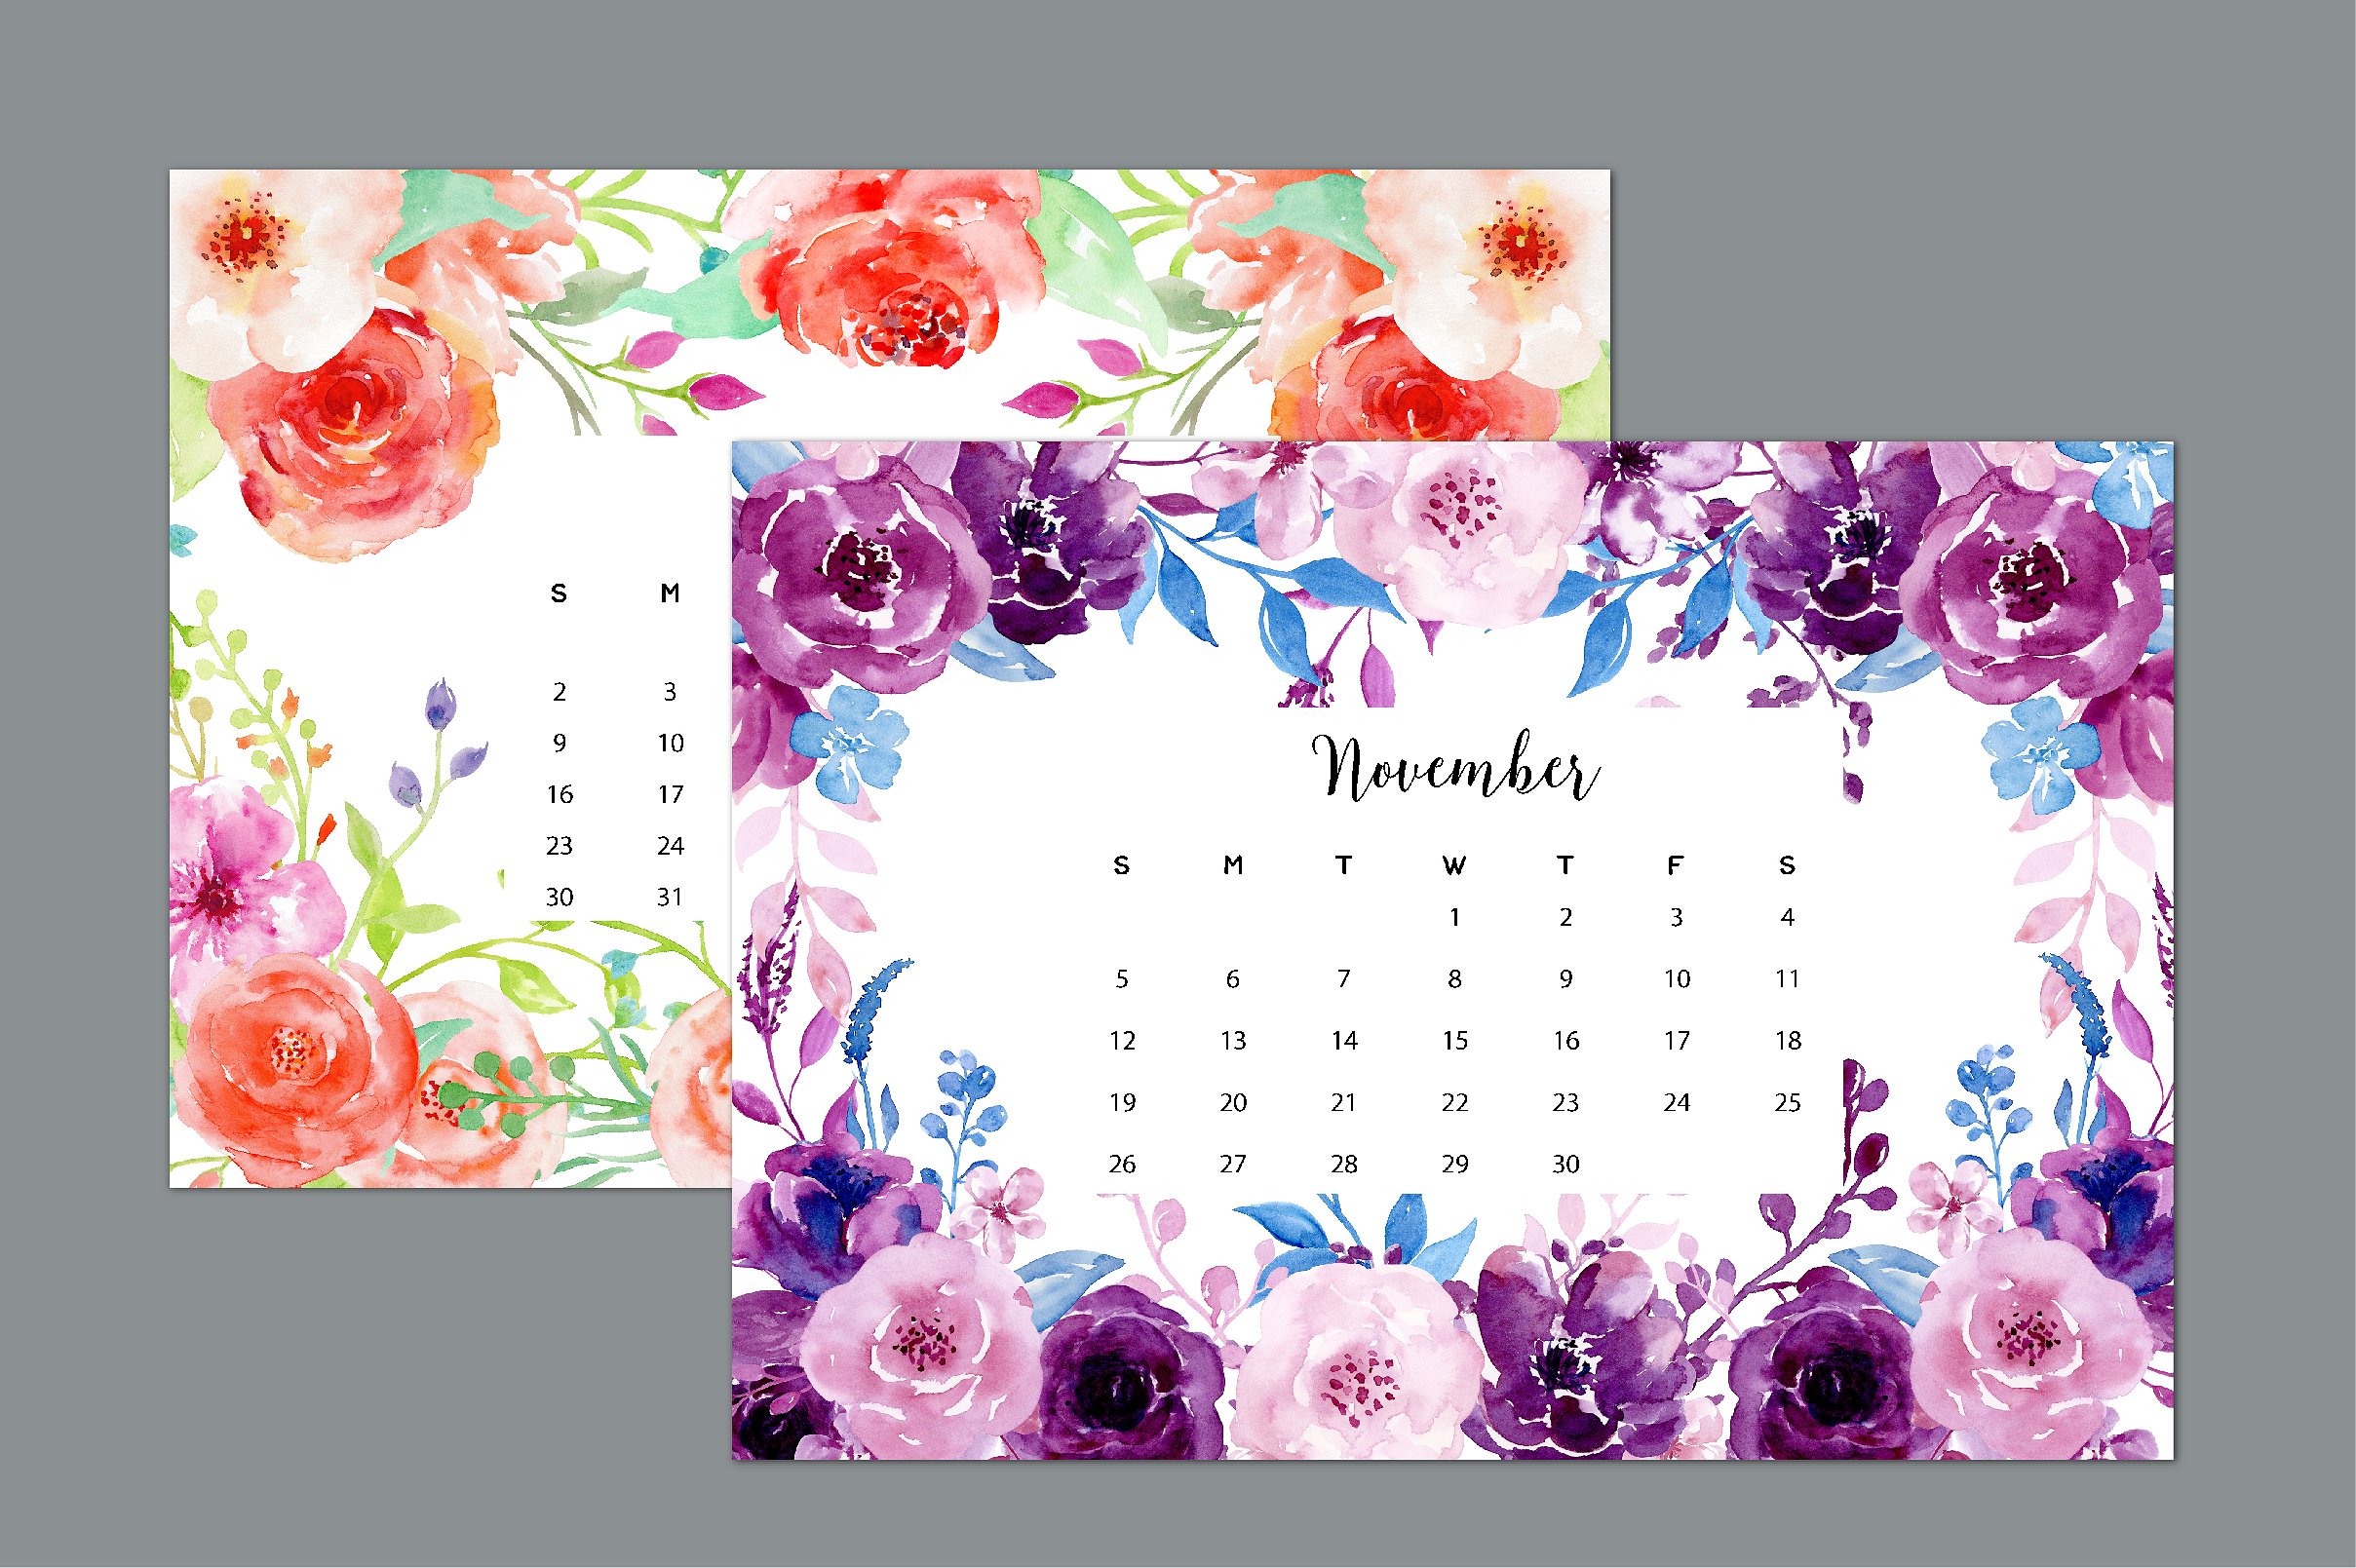 手绘水彩花卉植物元素日历设计模板2017 Calendar